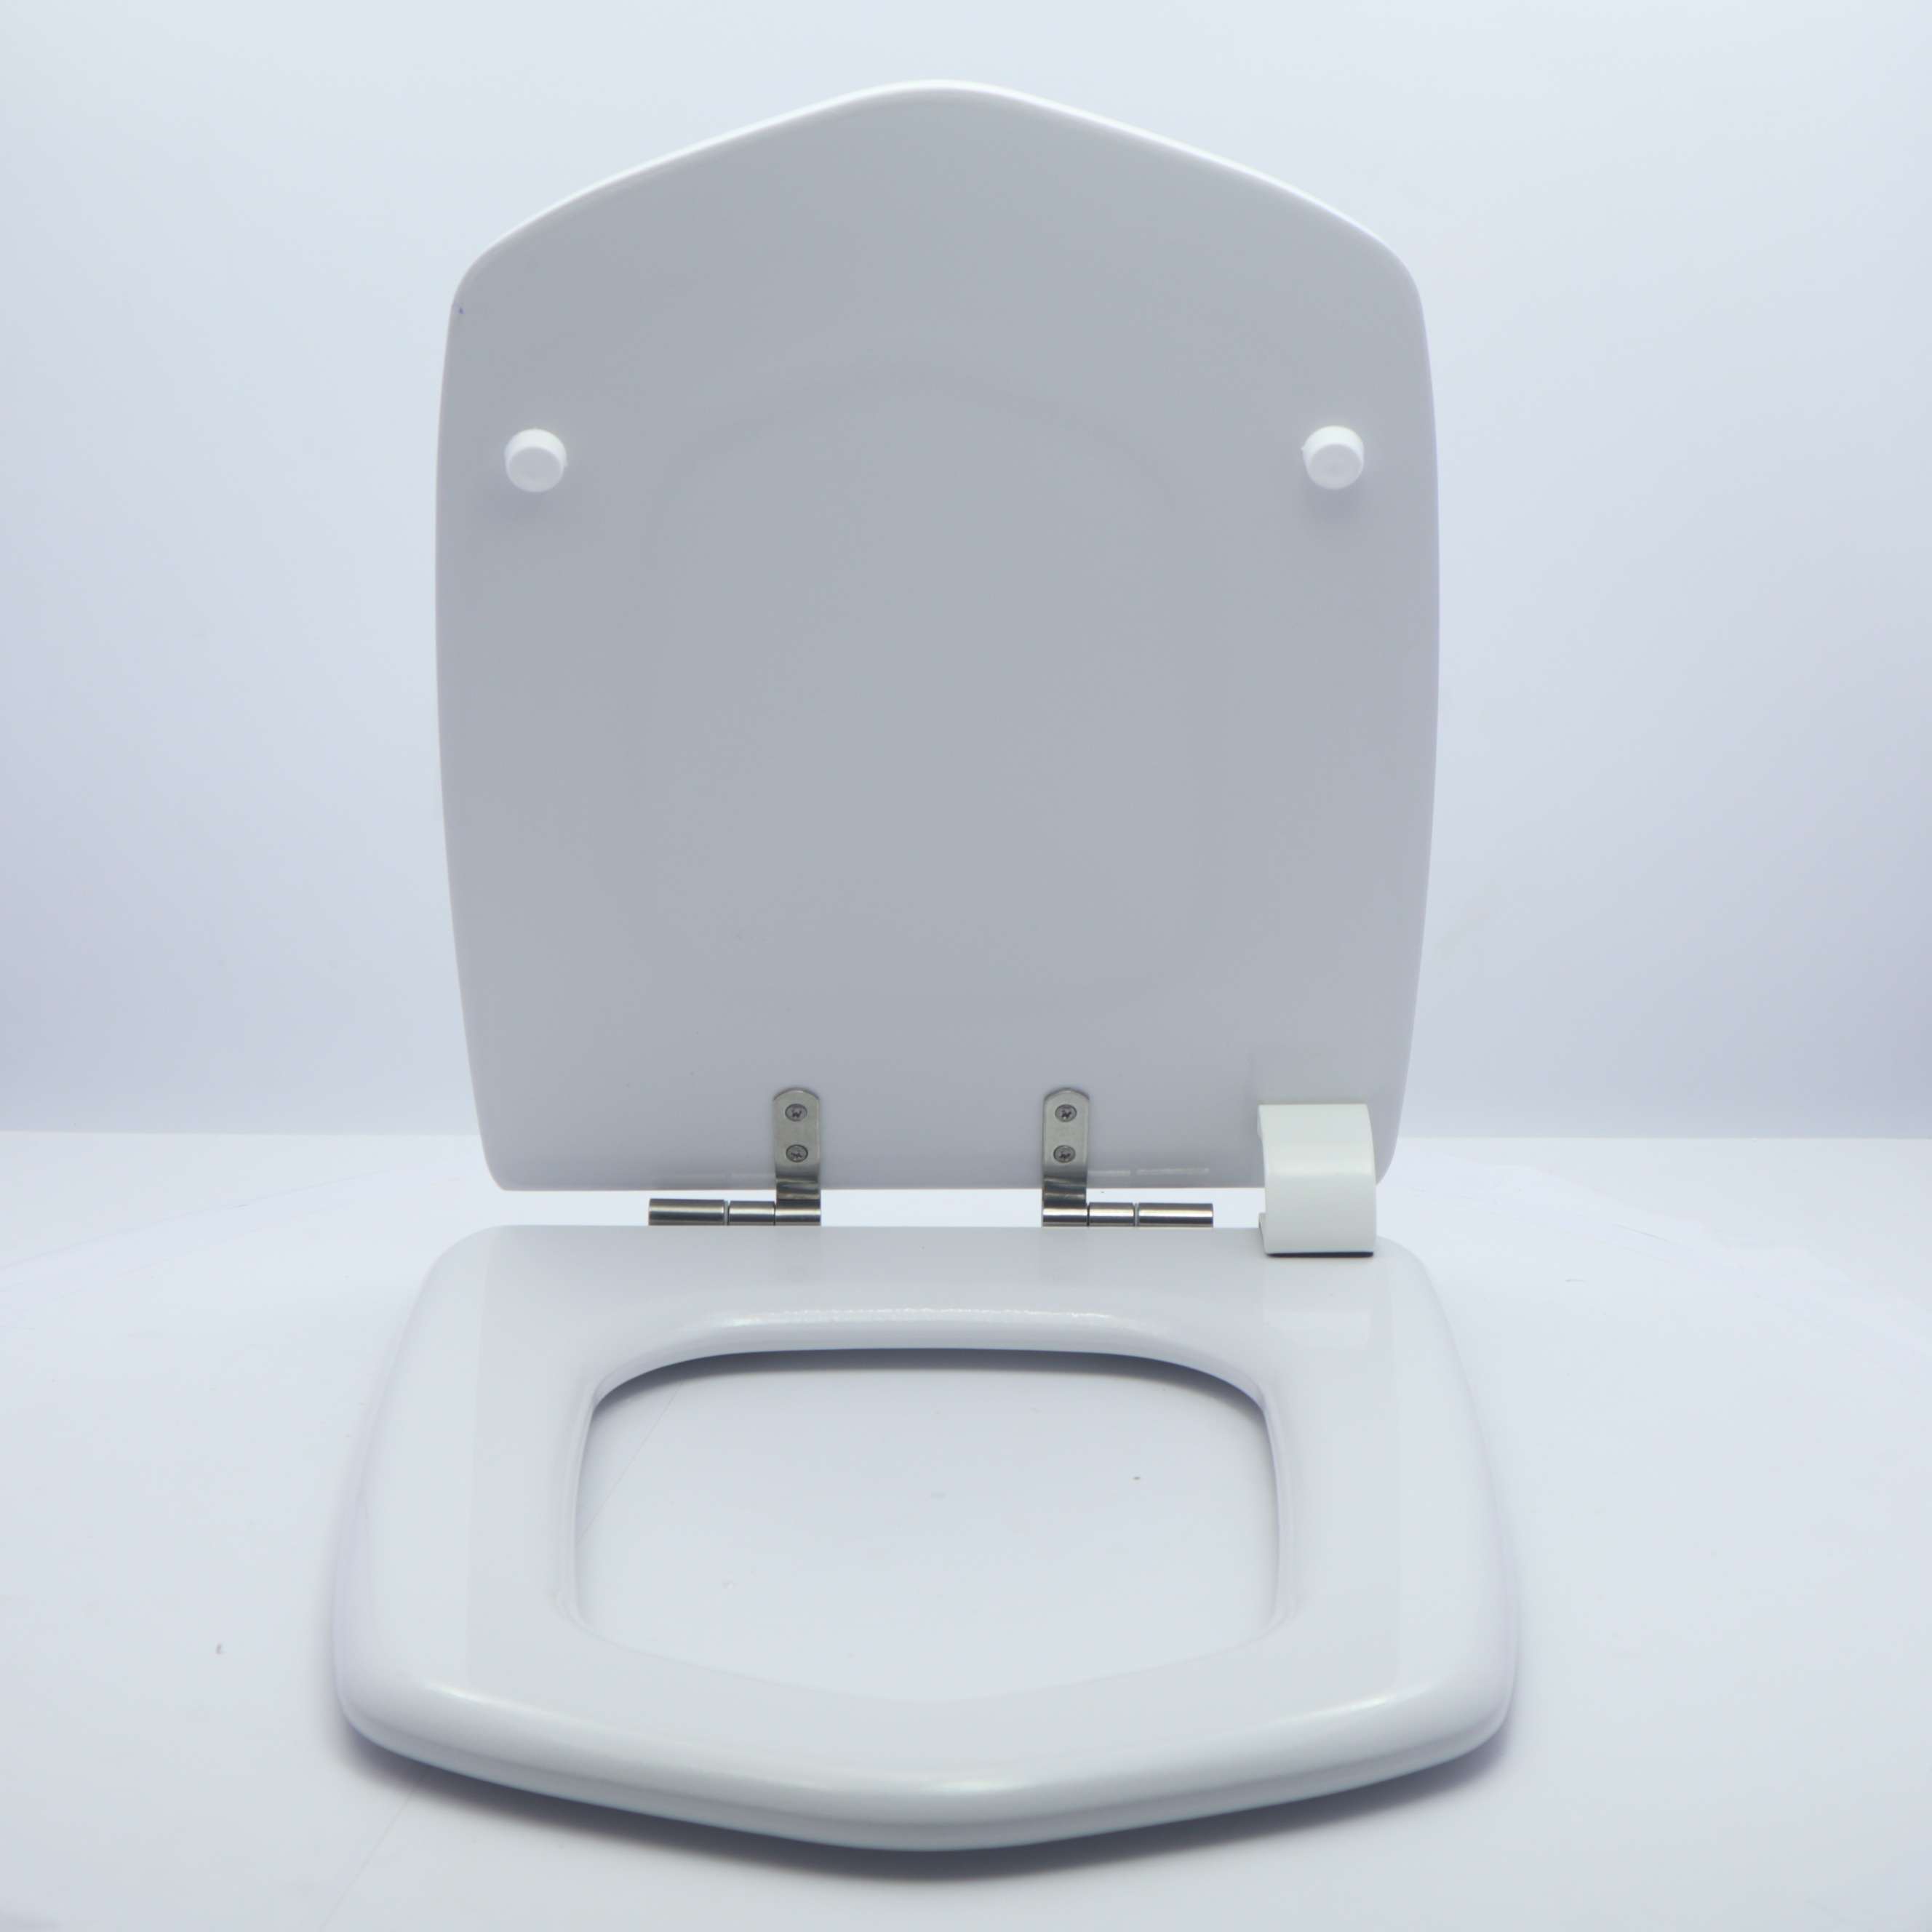 Tapa de WC compatible con el modelo Aquaria de Roca